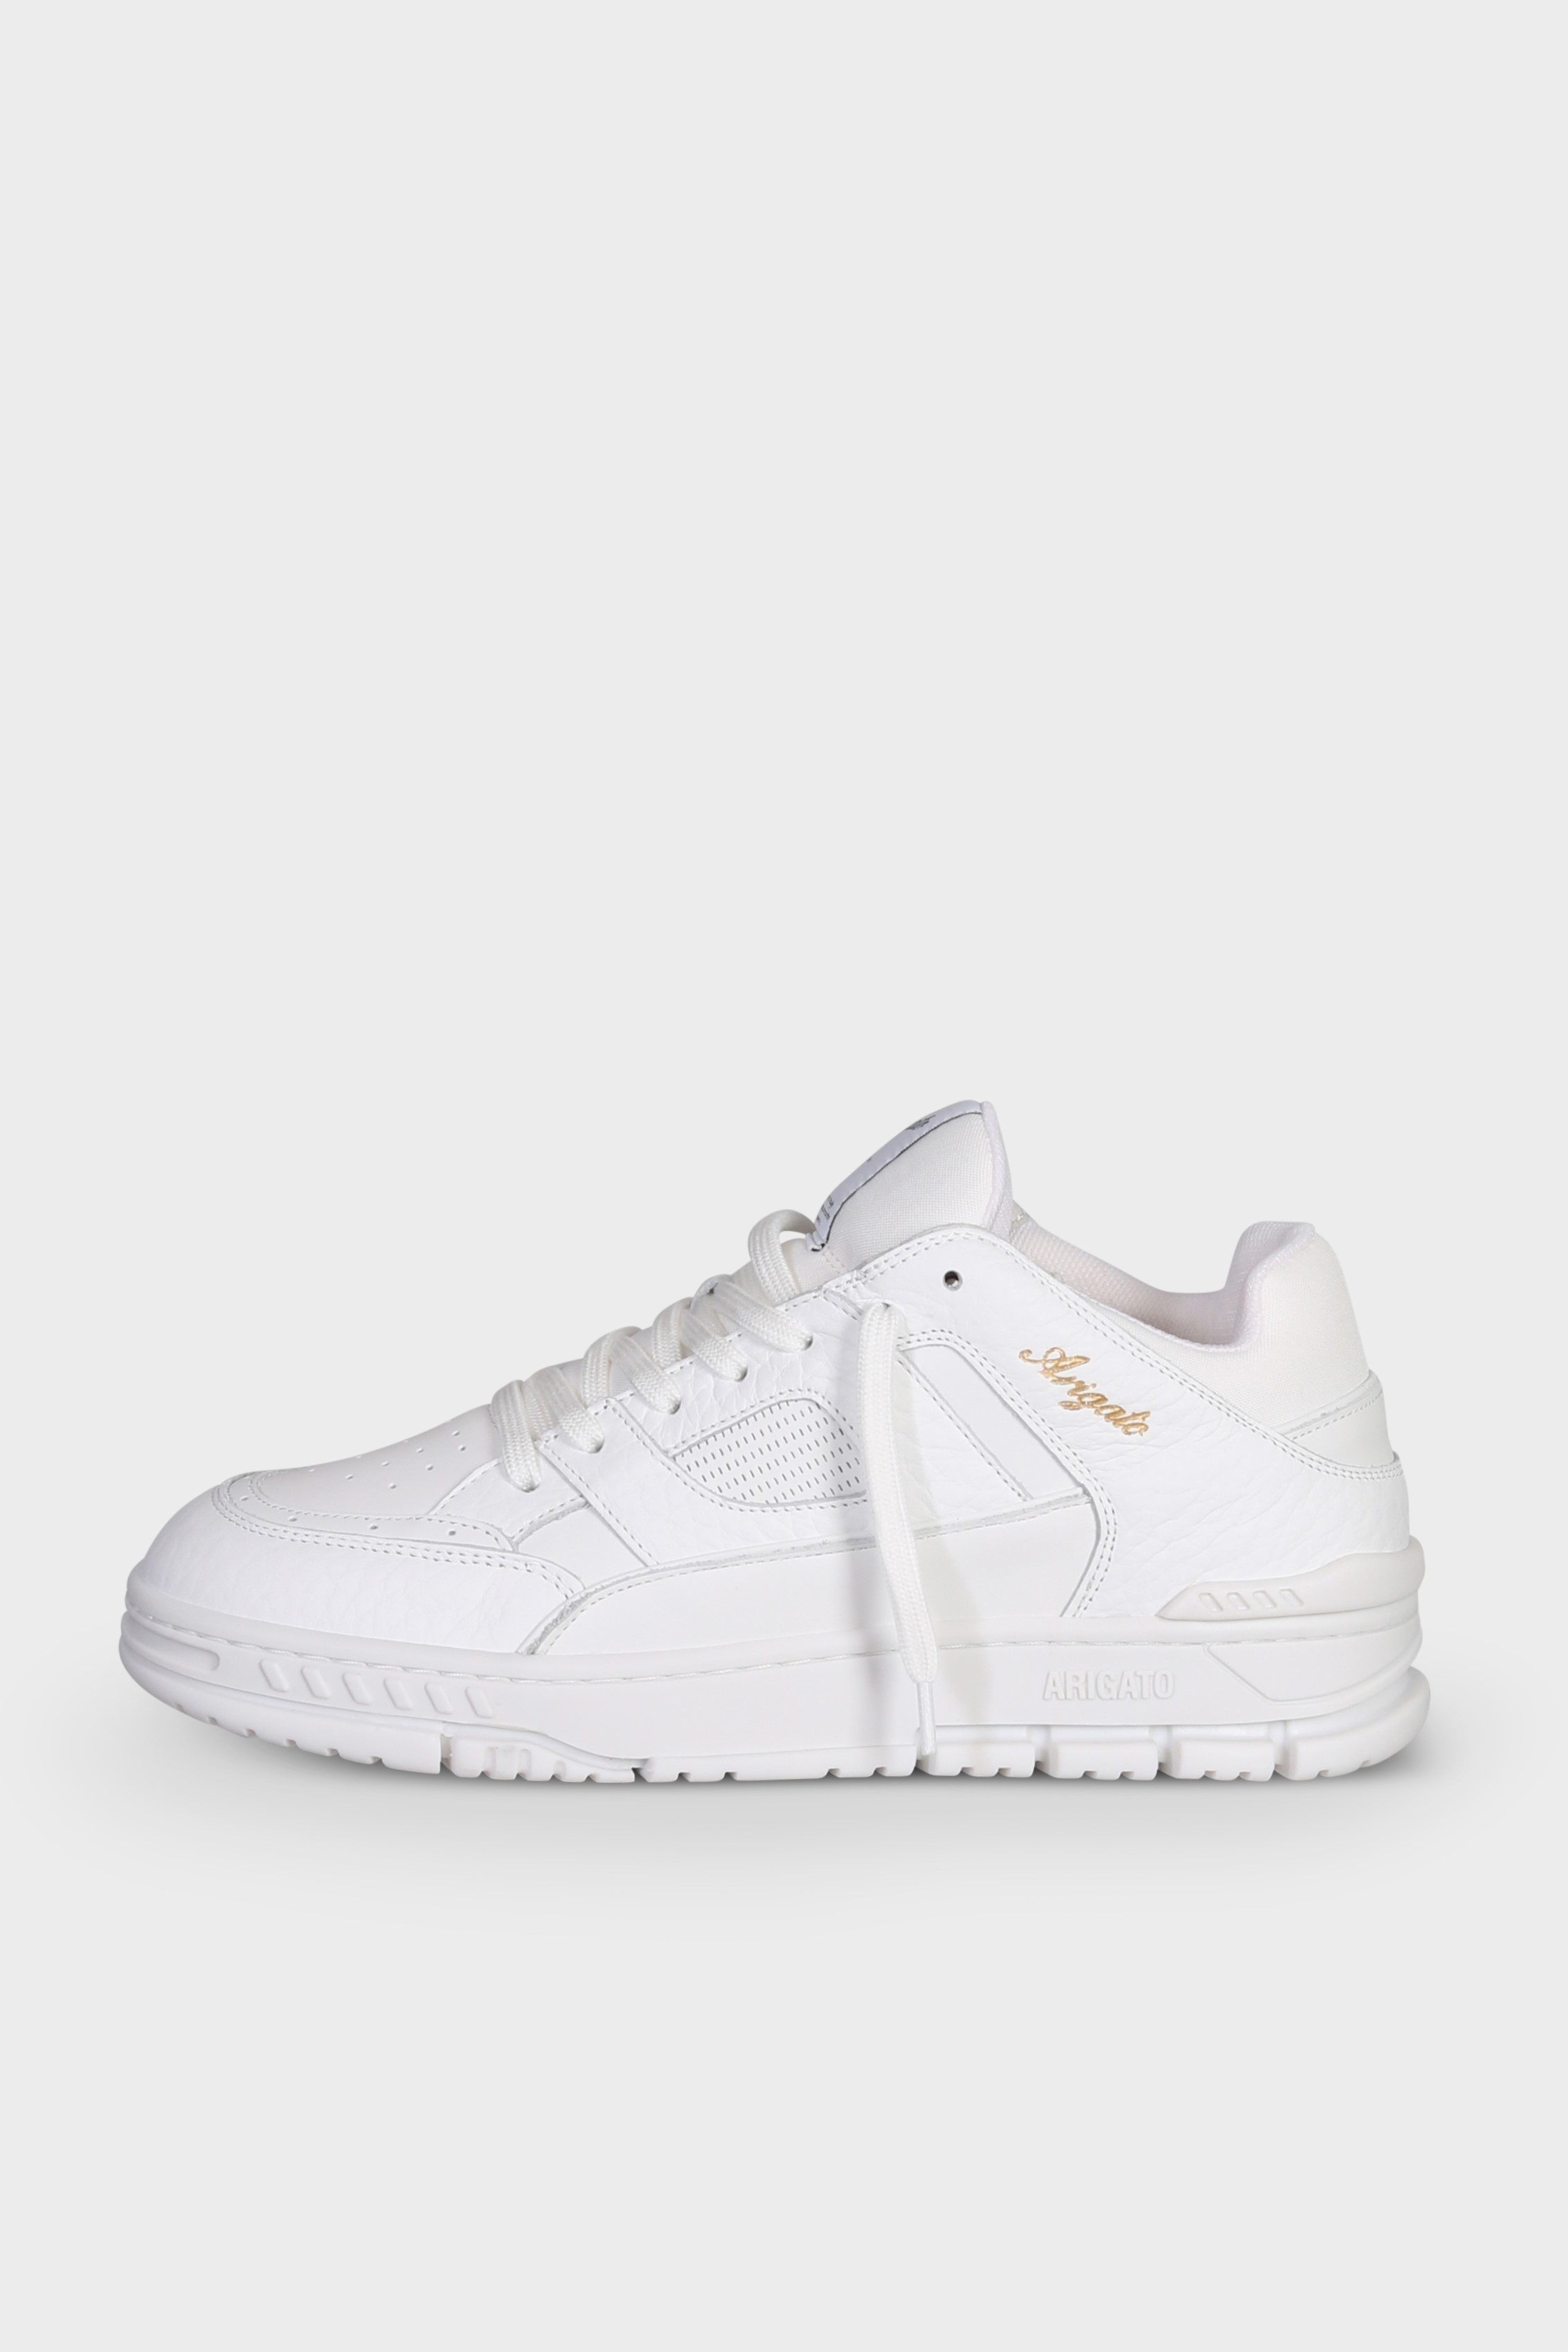 AXEL ARIGATO Area Lo Sneaker in White/White 47